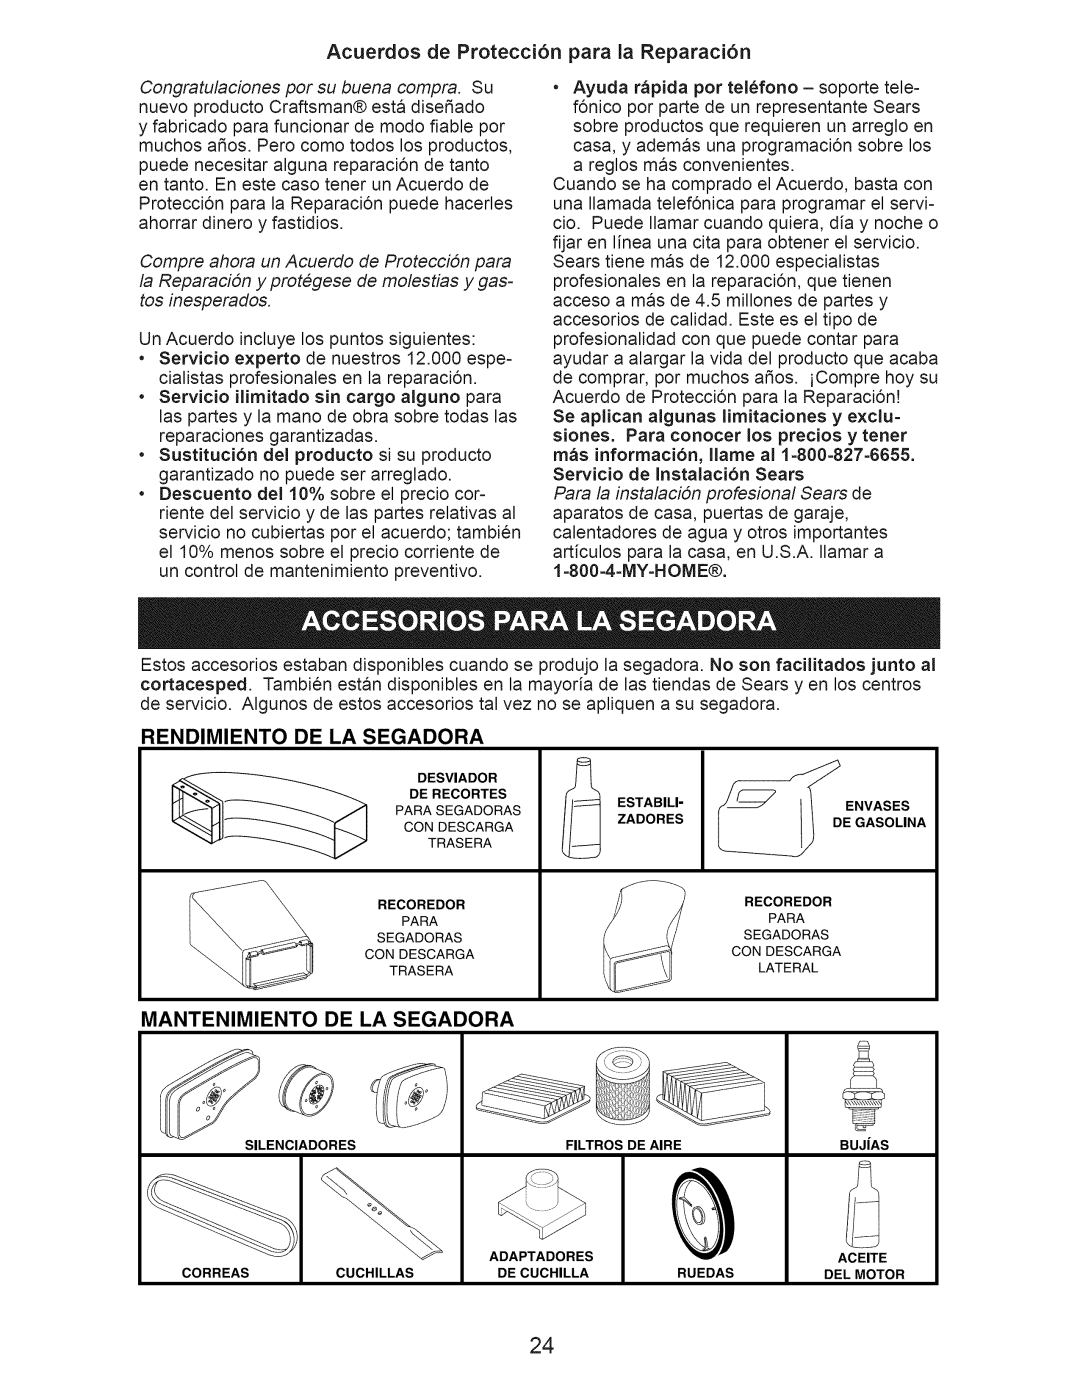 Craftsman 917.376240 Acuerdos de Protecci6n para la Reparaci6n, Rendimiento De La Segadora, Mantenimiento De La Segadora 